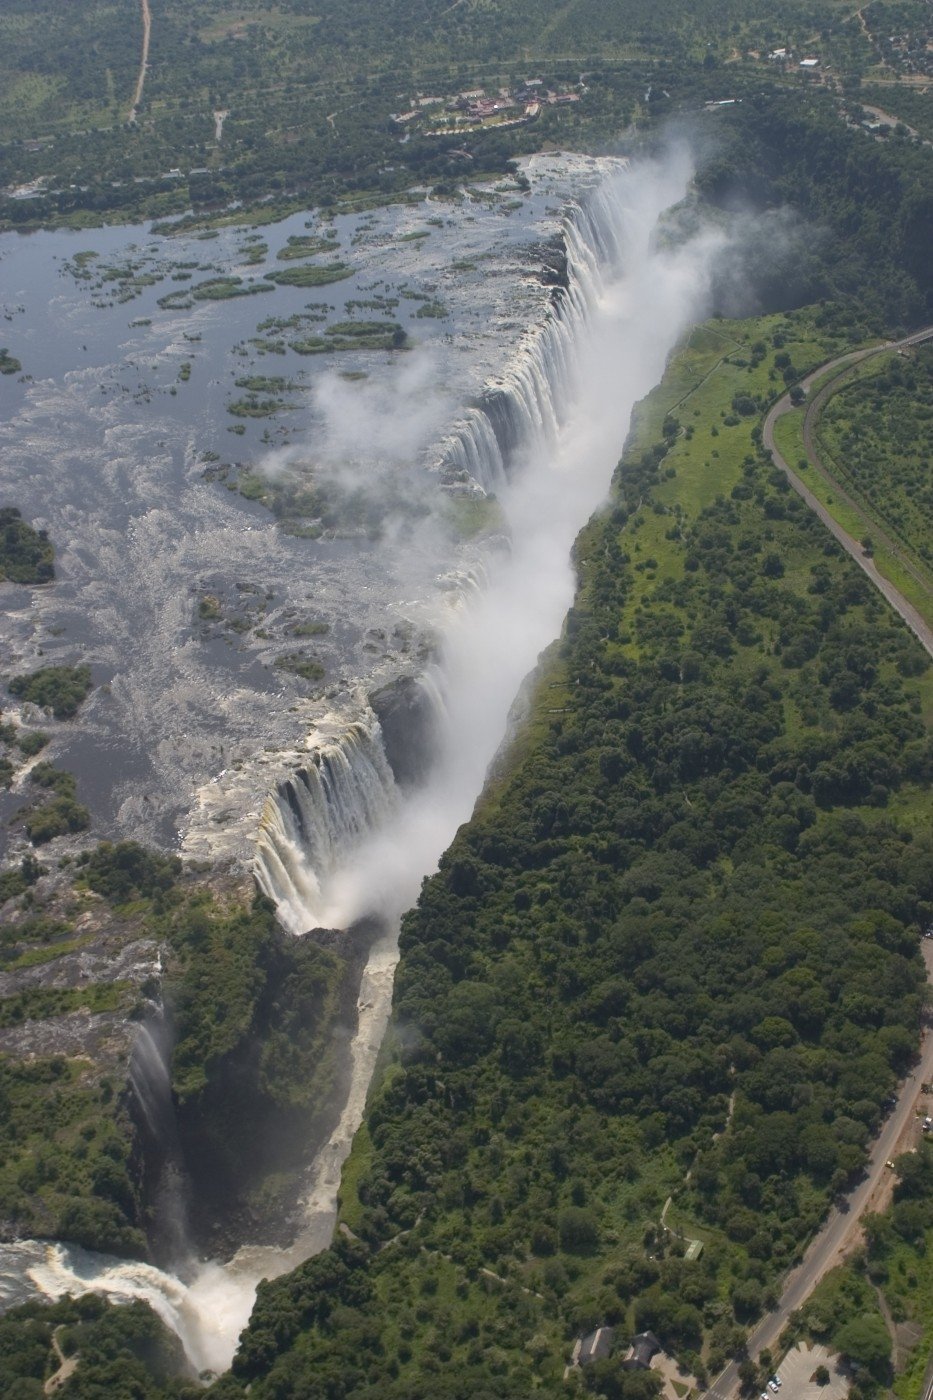 Tato masa vody tvoří hranici nezi Zambií a Zimbabwe